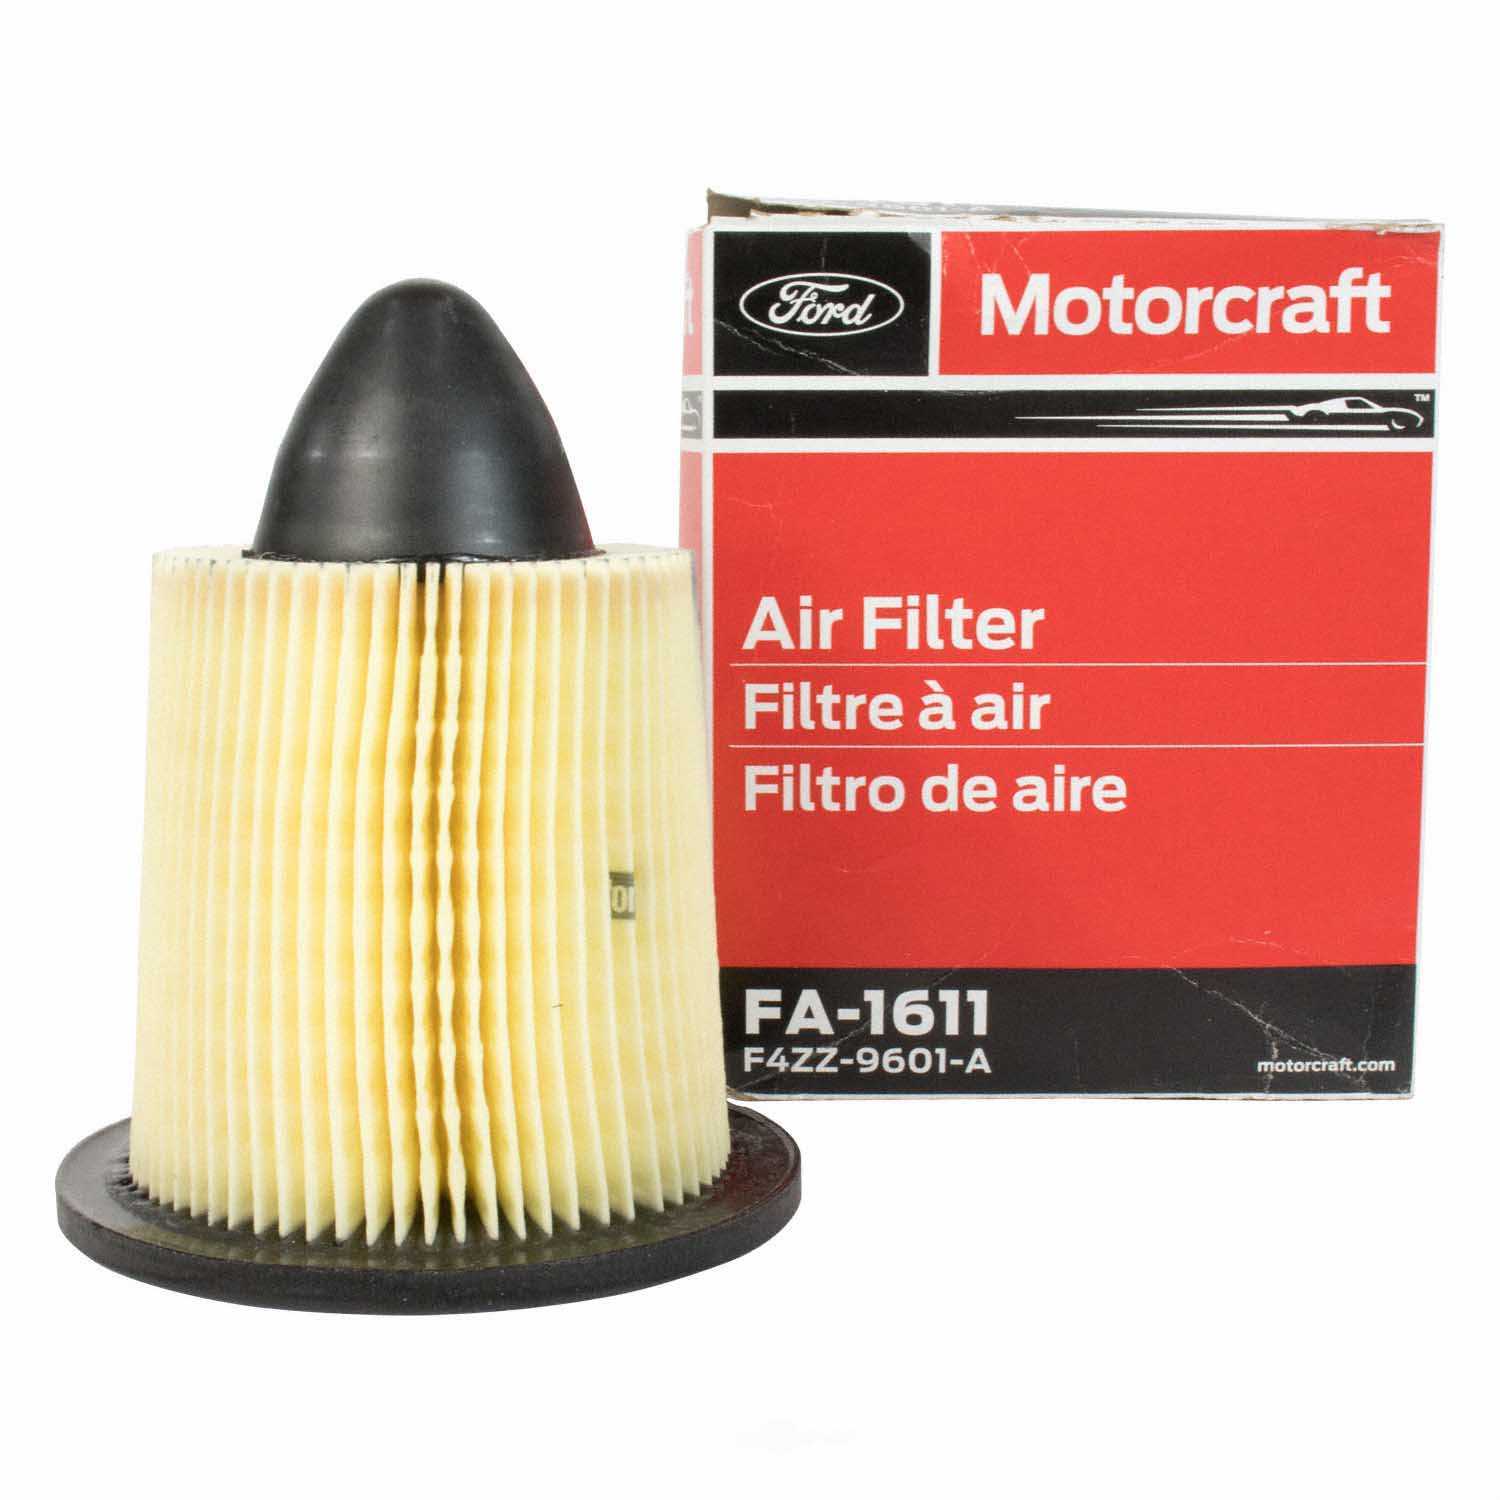 MOTORCRAFT - Air Filter - MOT FA-1611